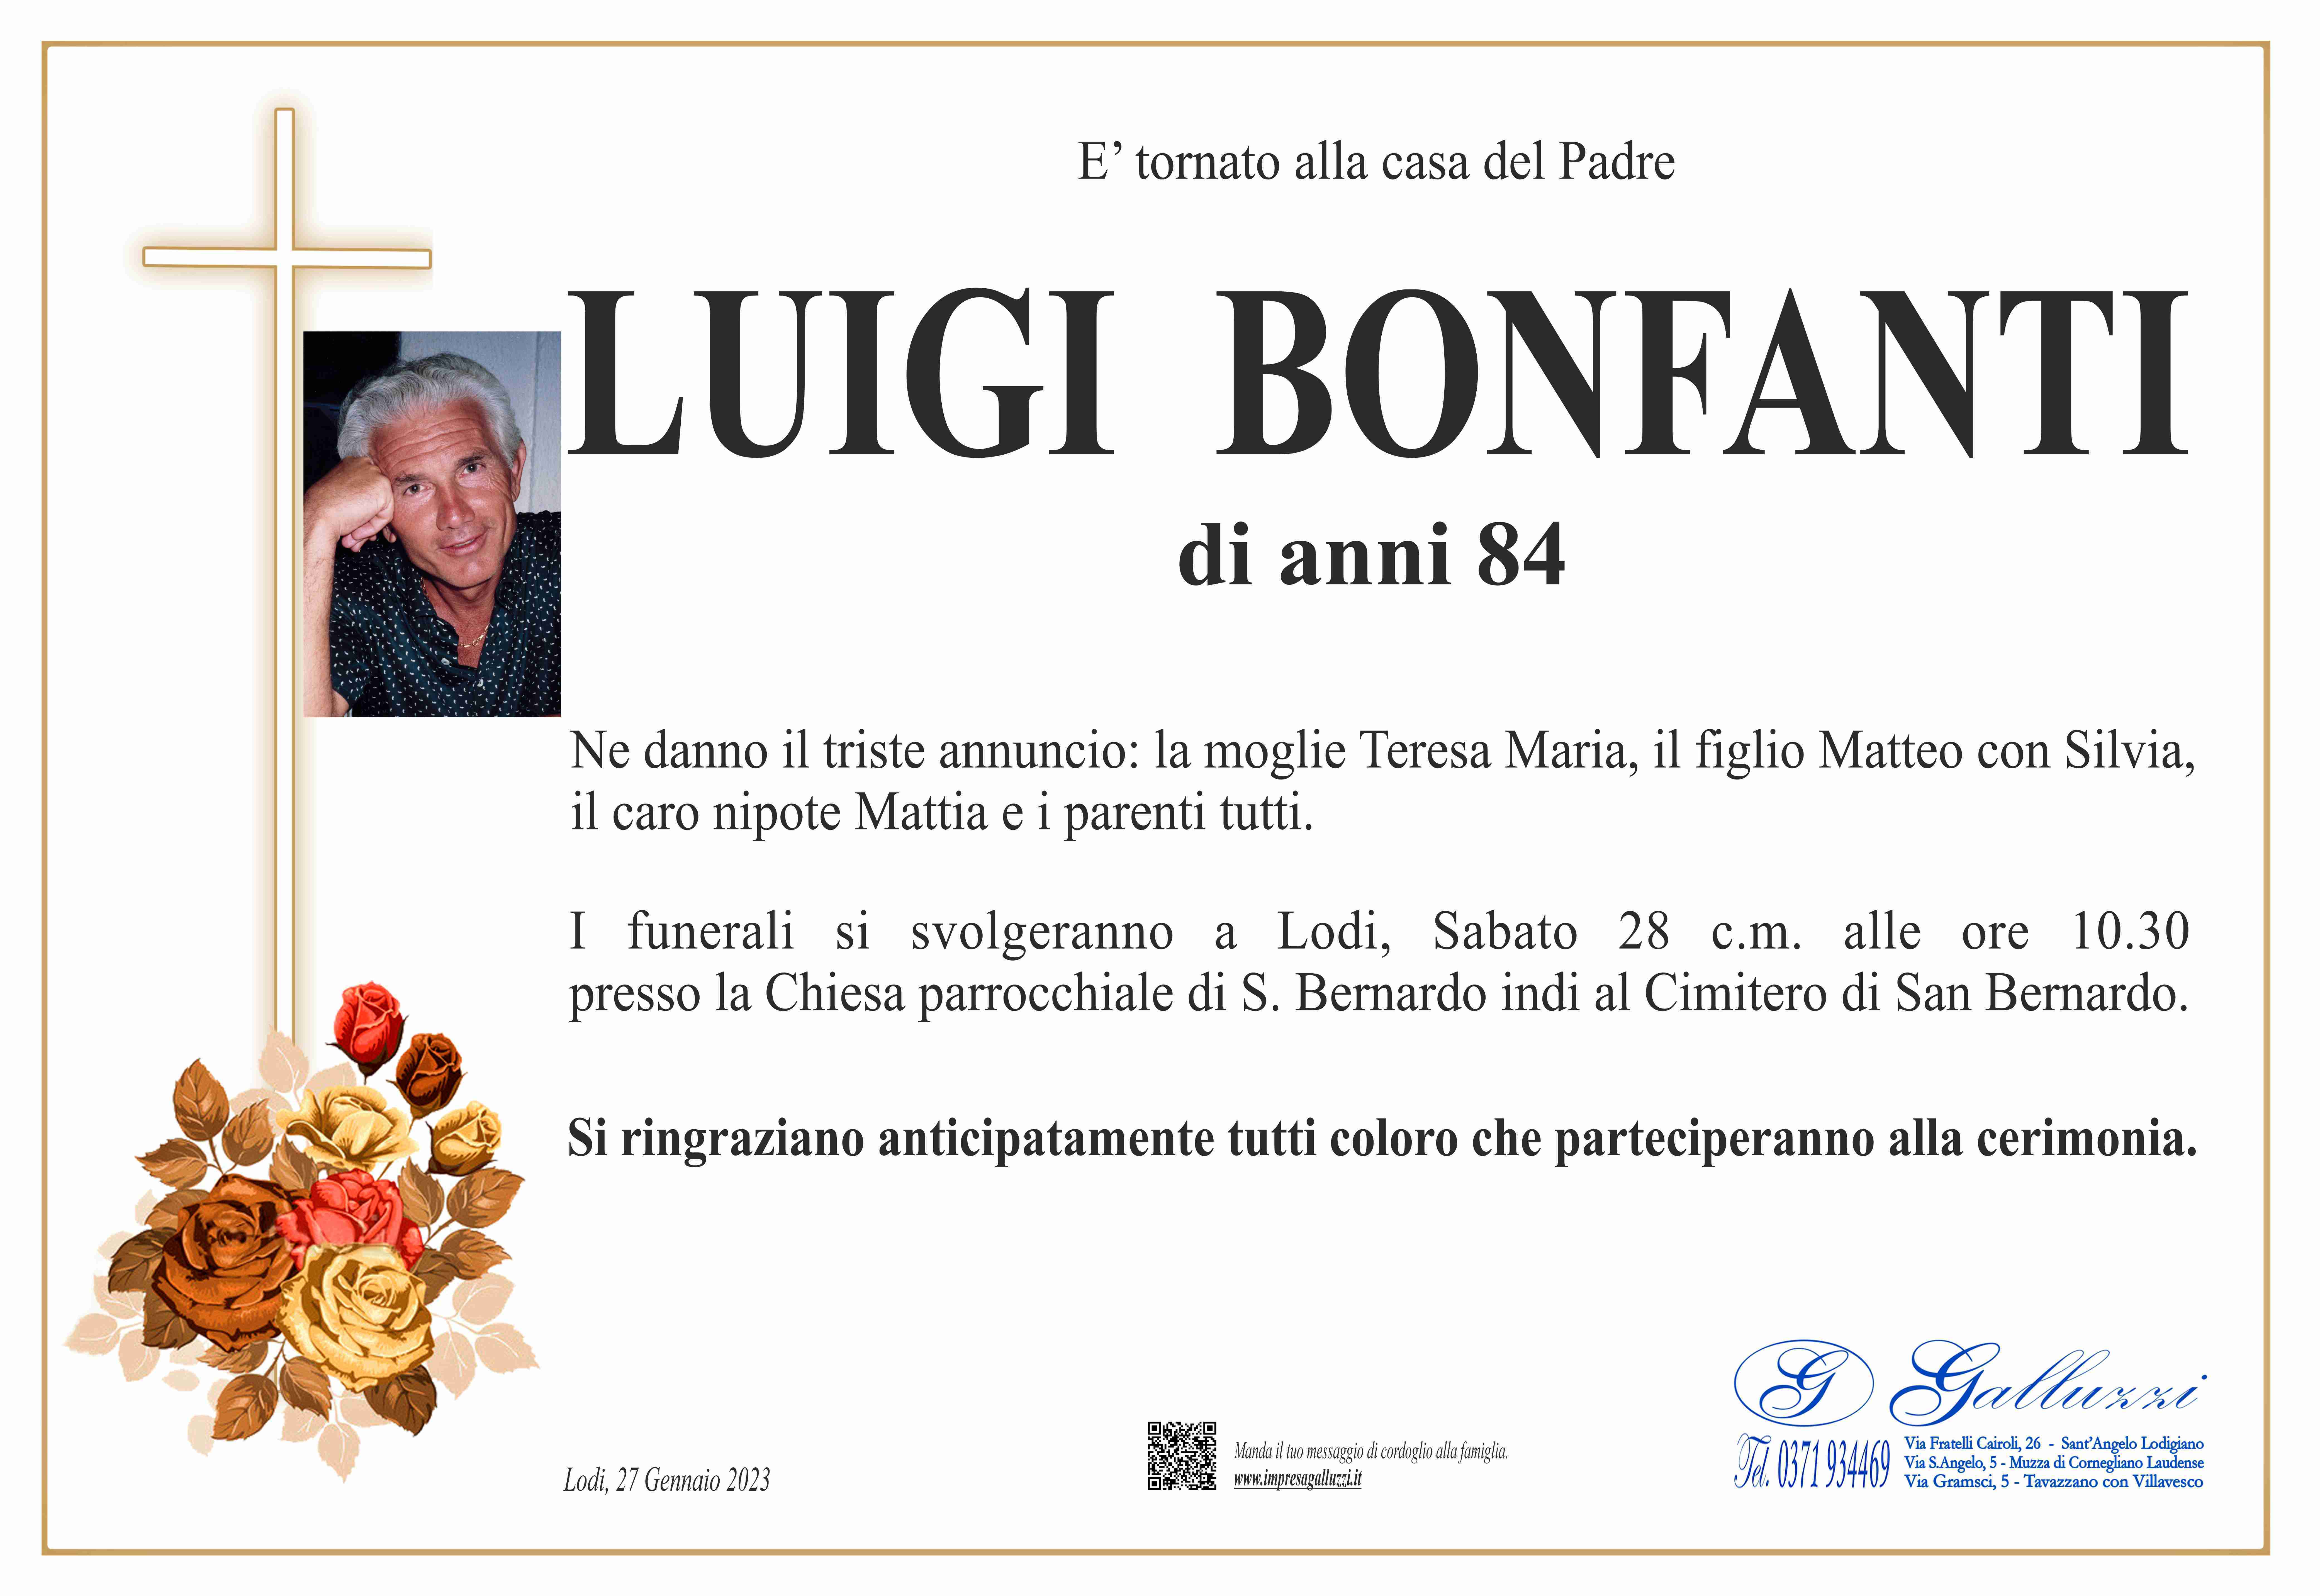 Luigi Bonfanti